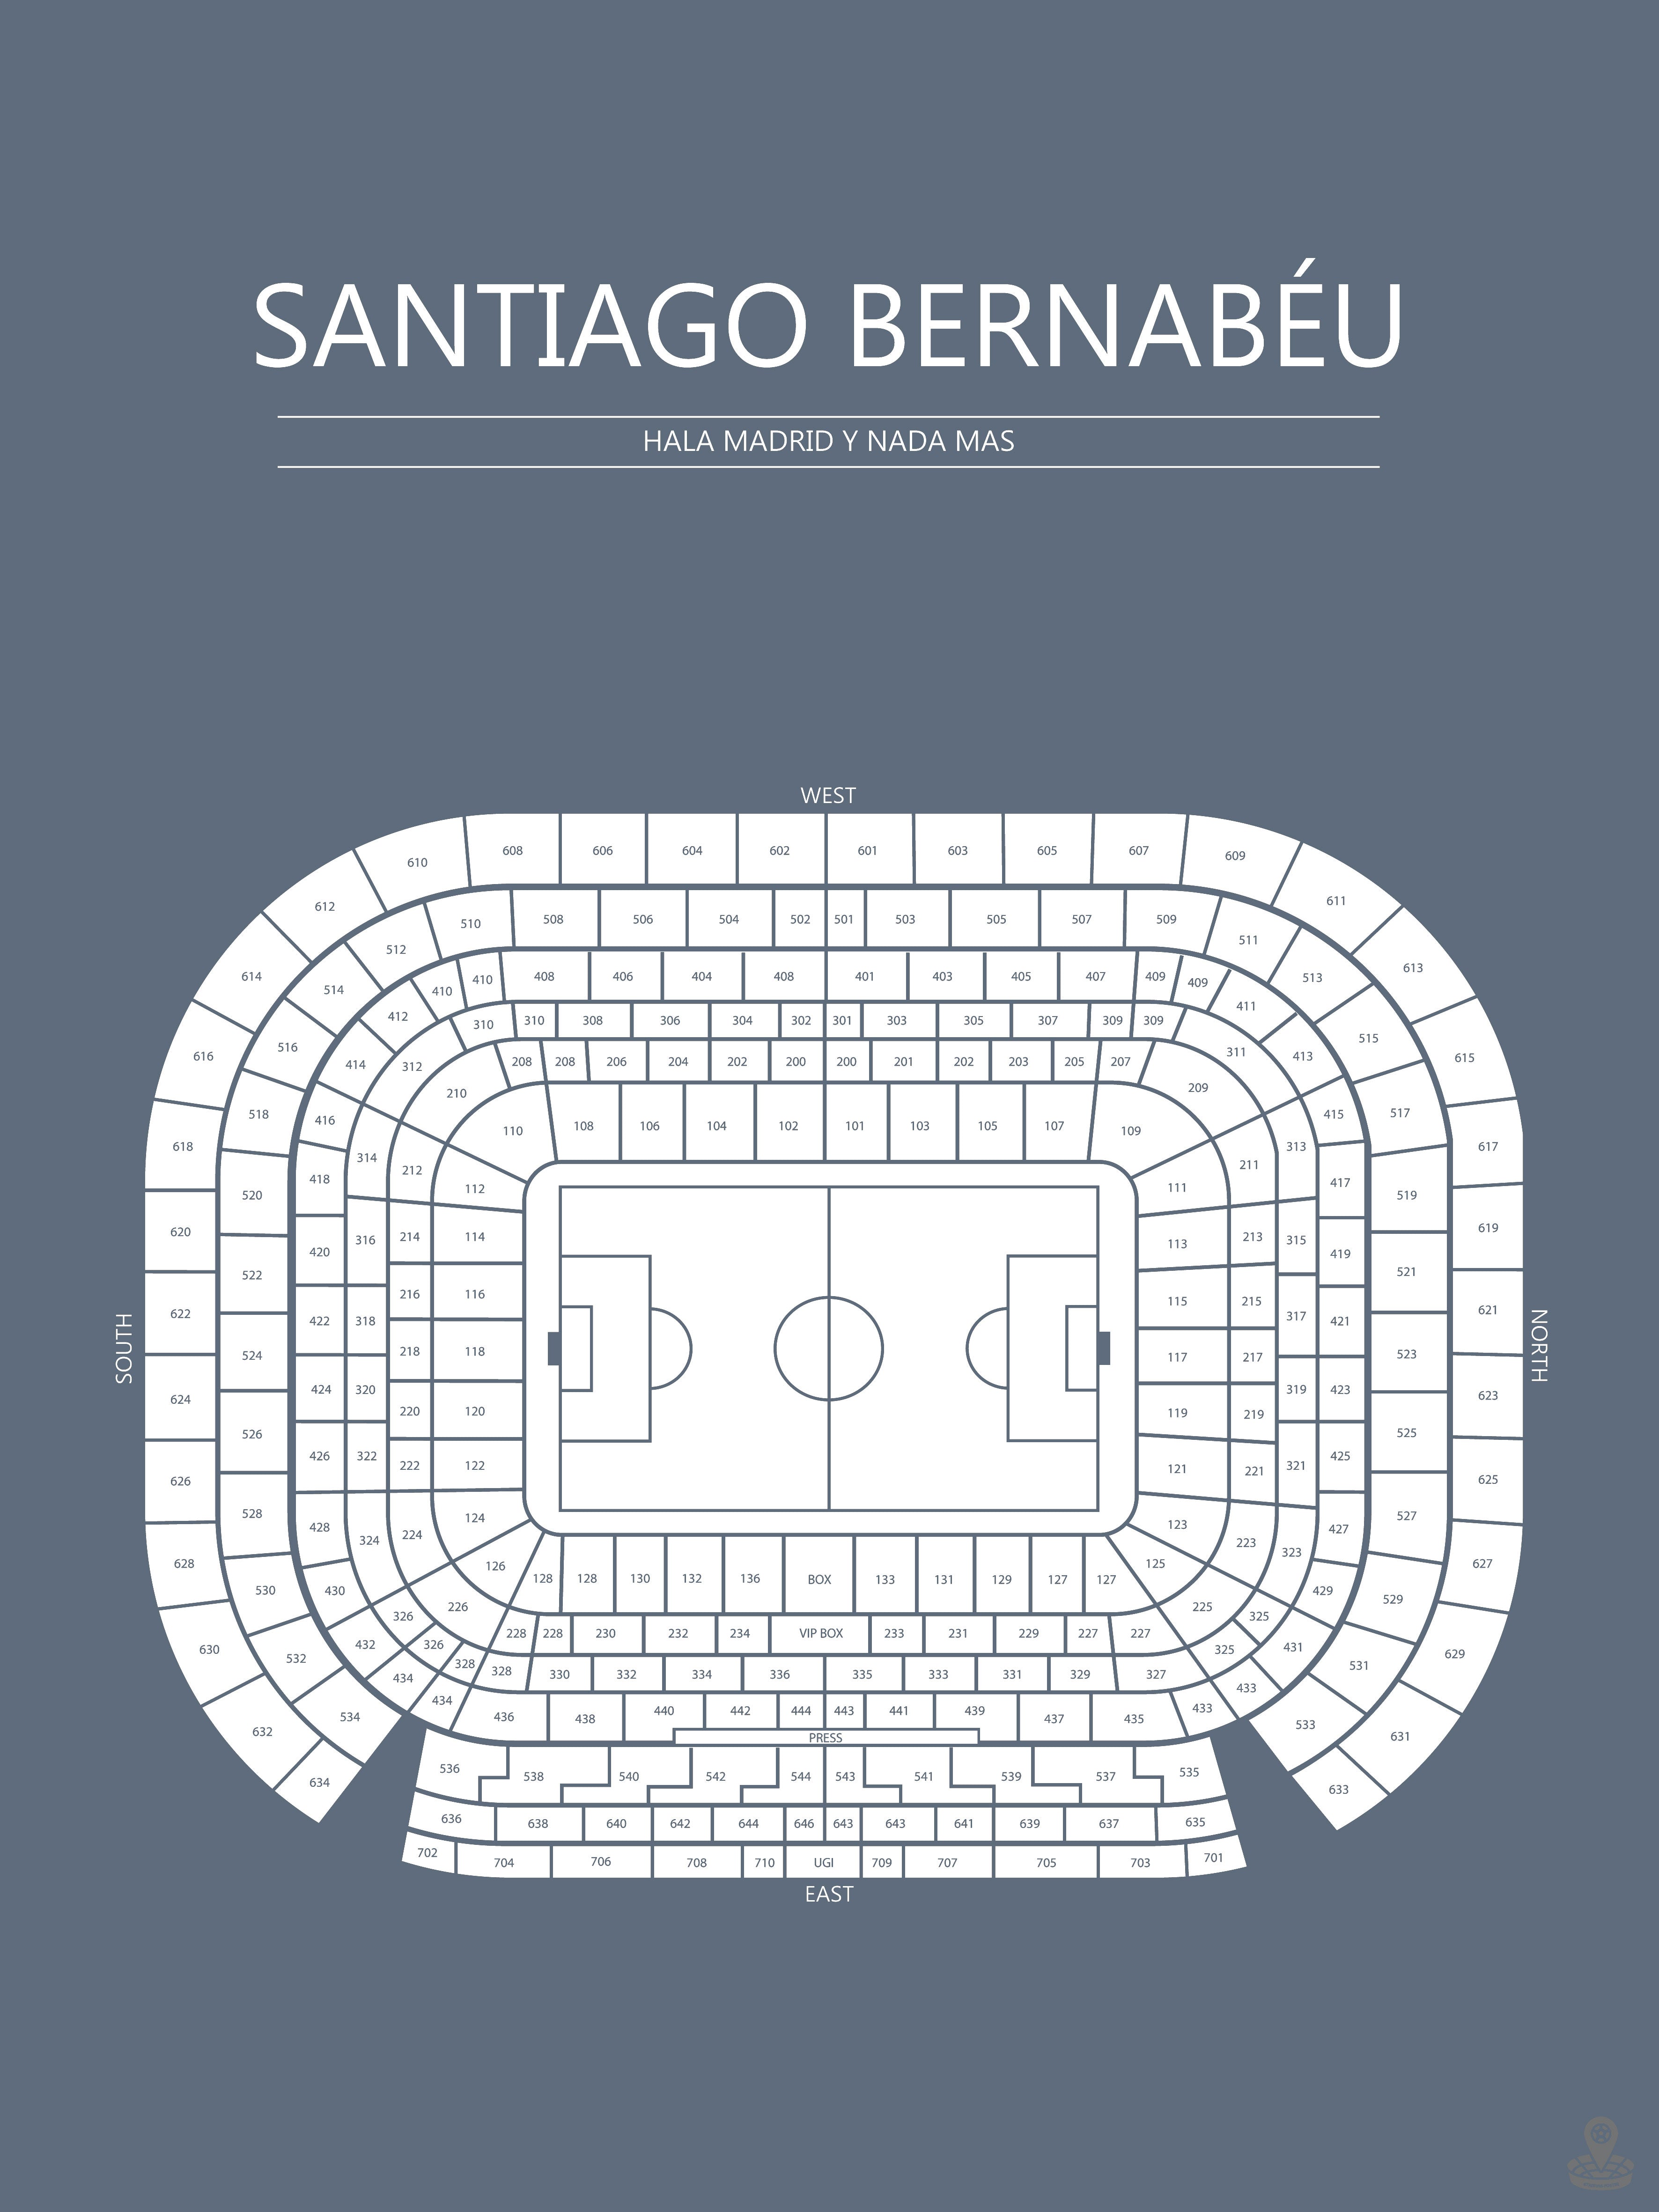 Fodbold plakat Real Madrid Santiago Bernabeu  Blågrå